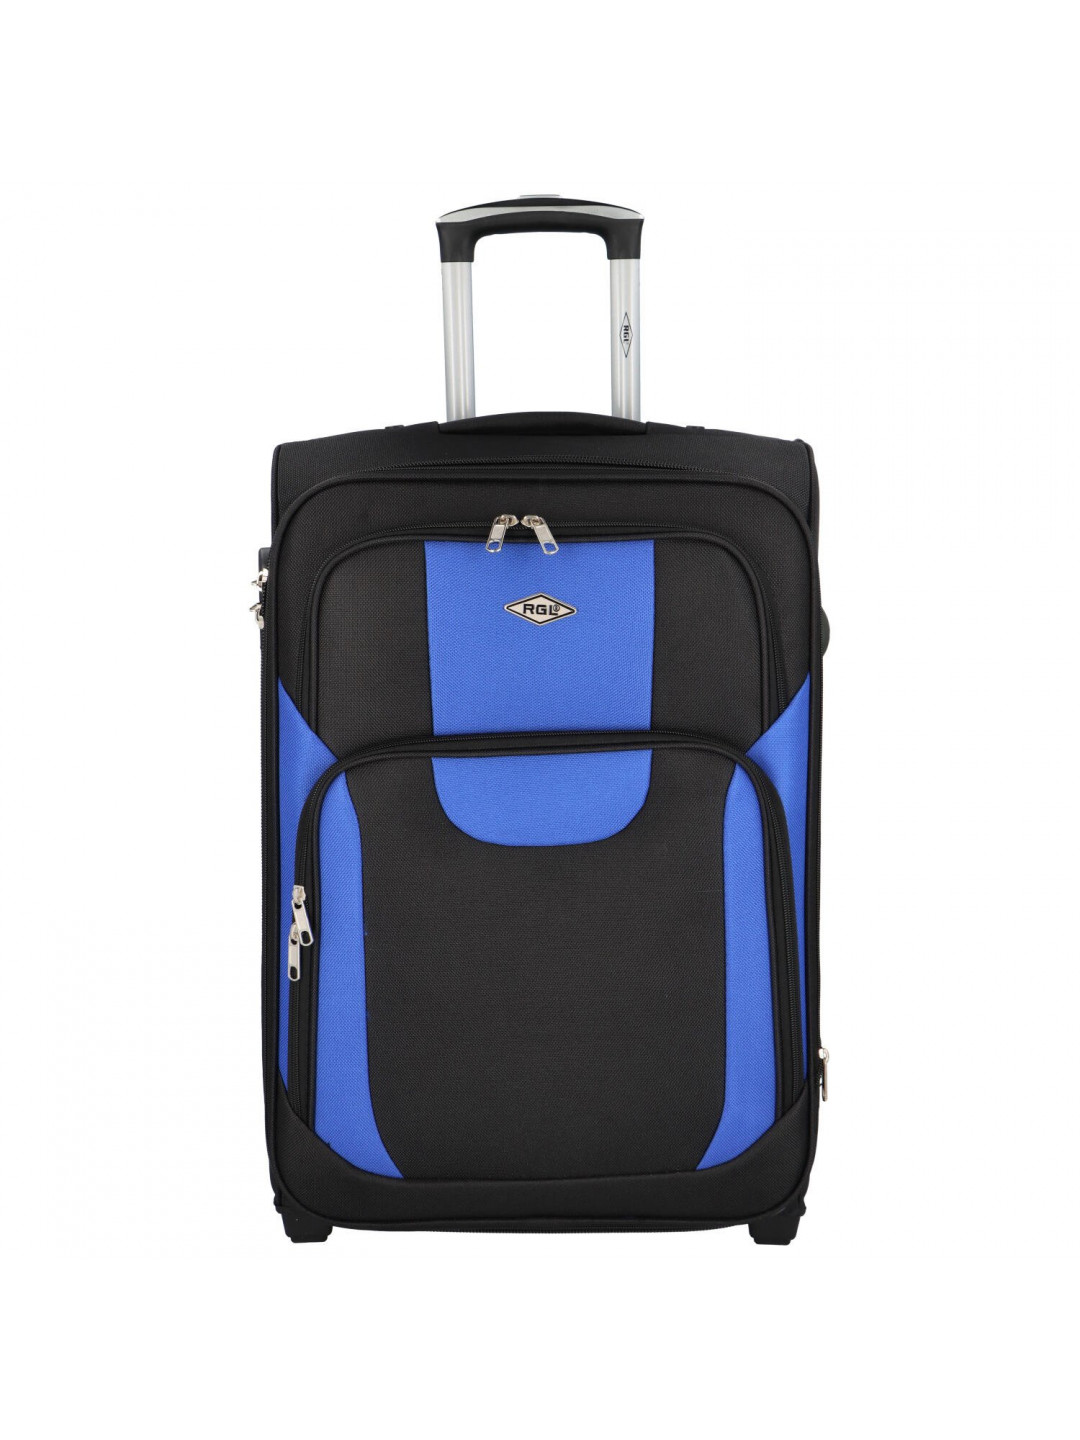 Cestovní kufr Asie velikost L černá-modrá